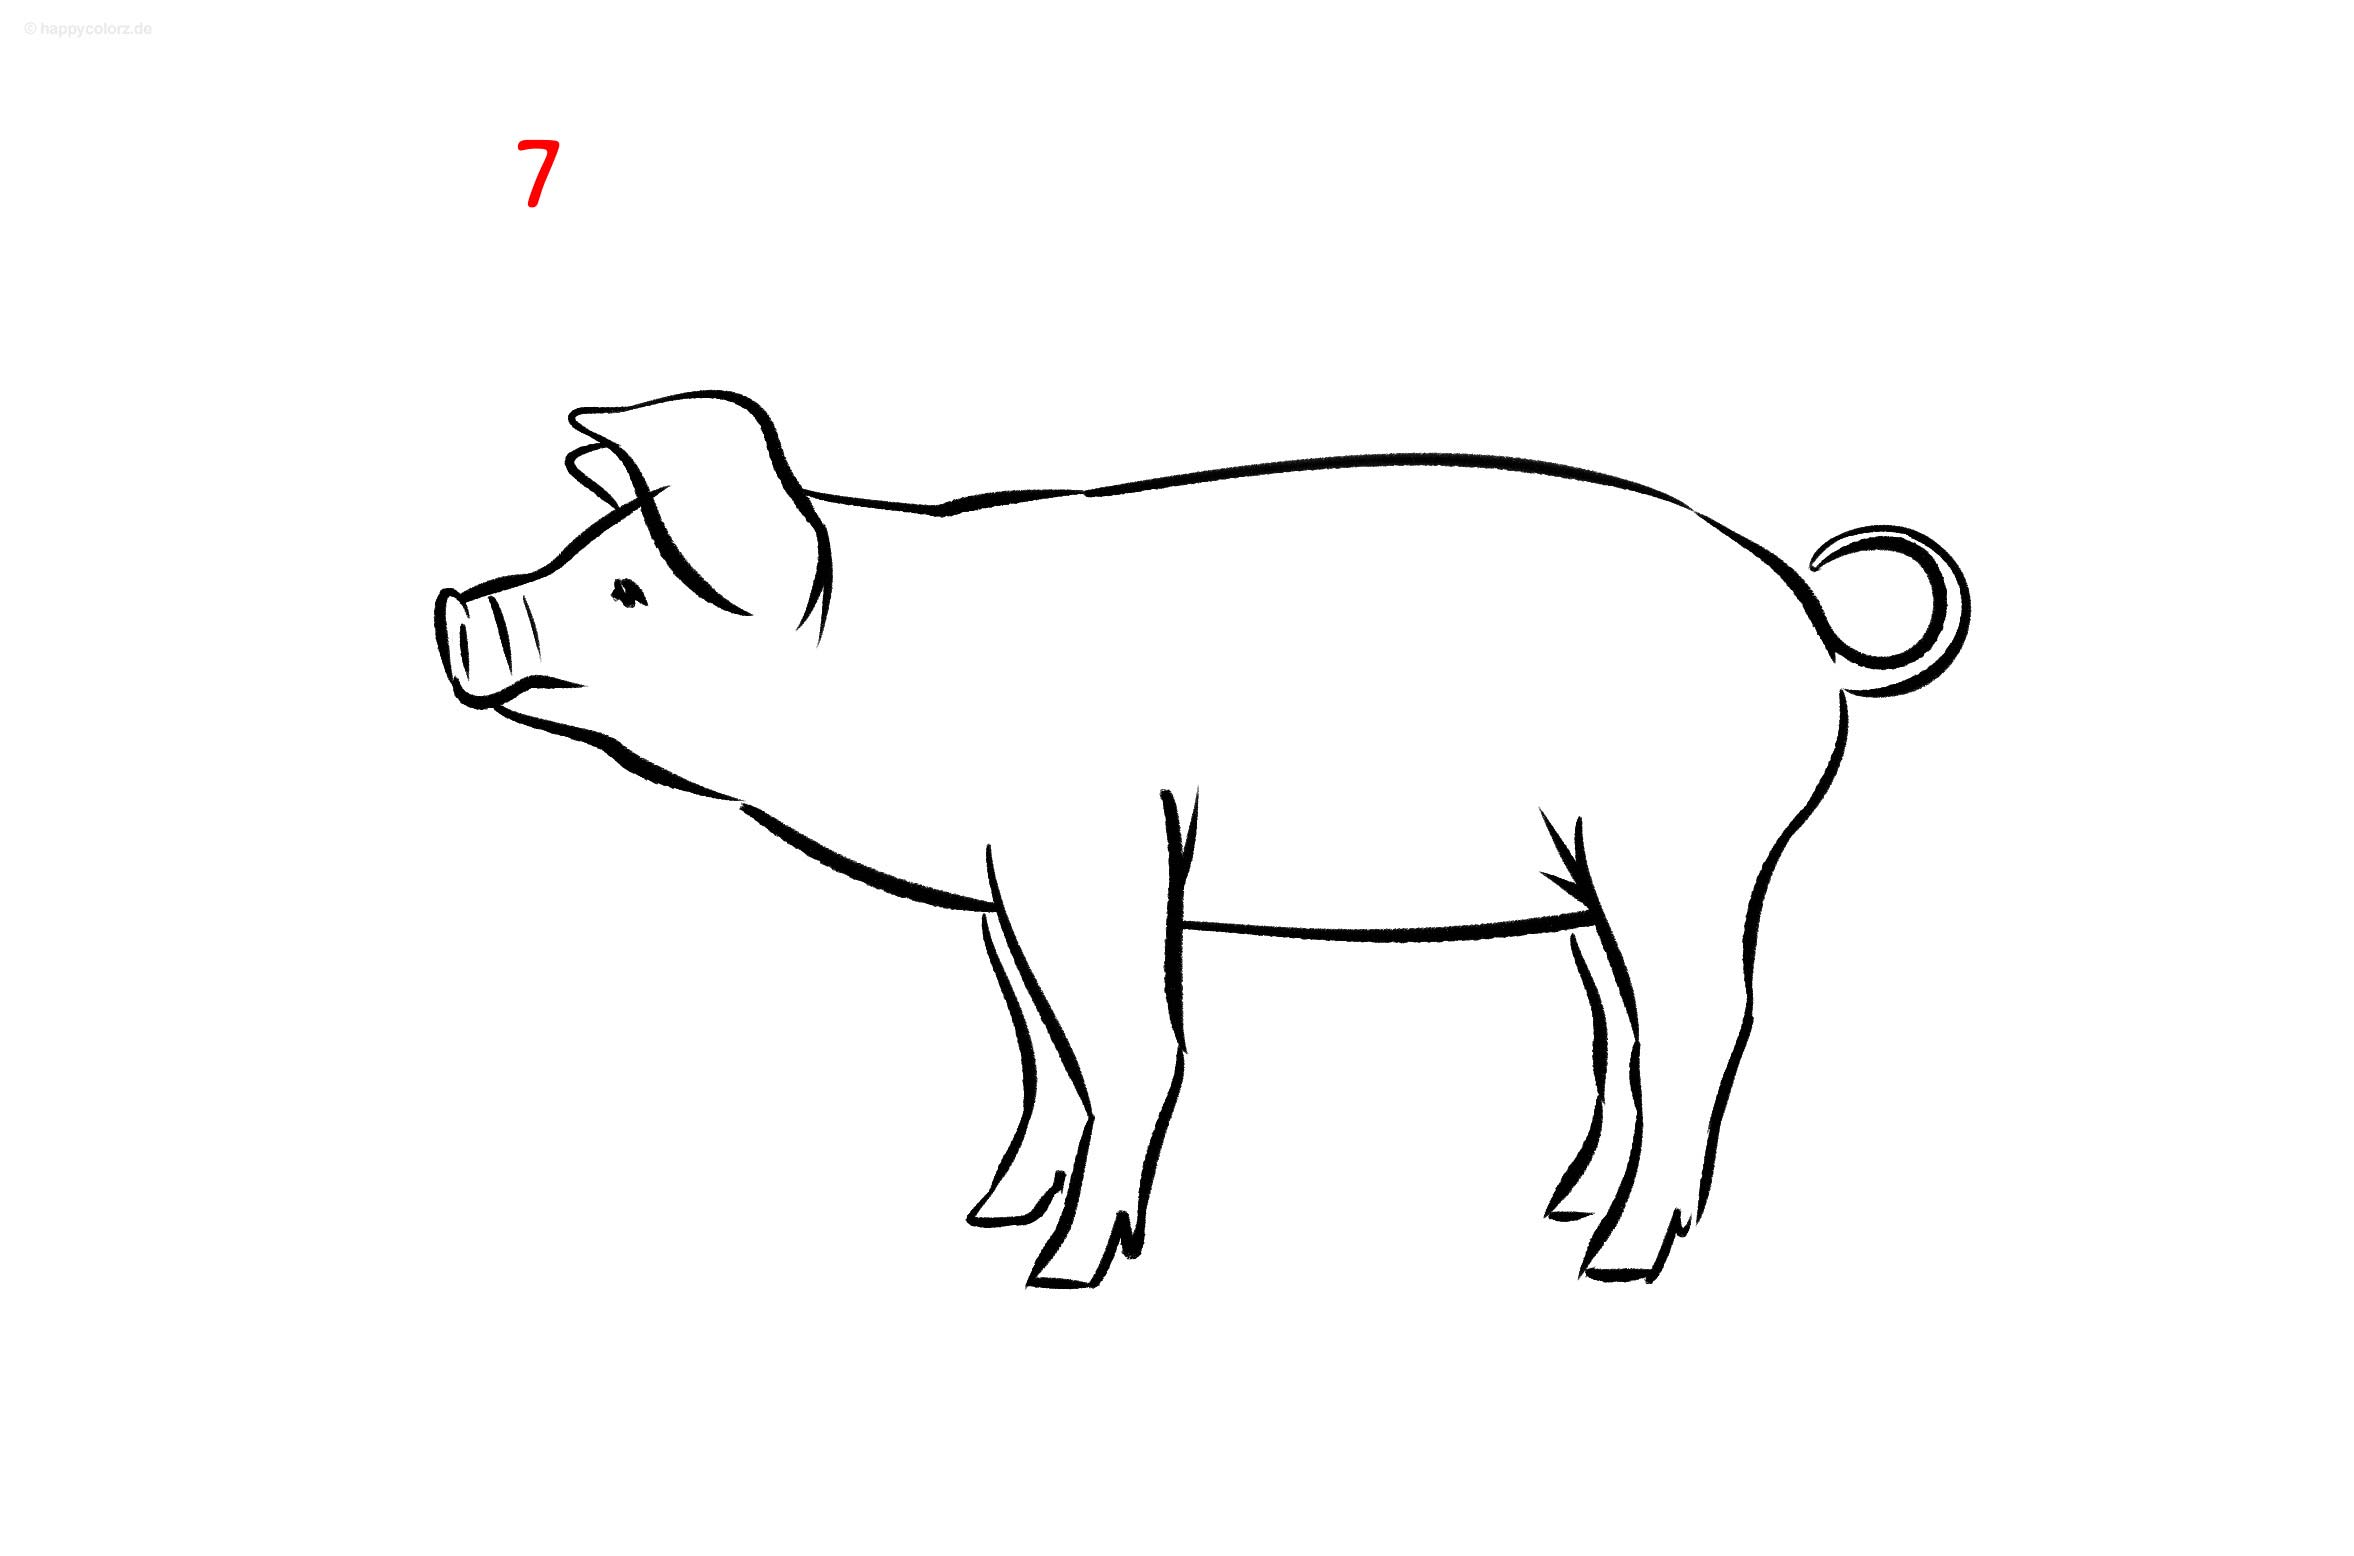 Anleitung: Schwein zeichnen